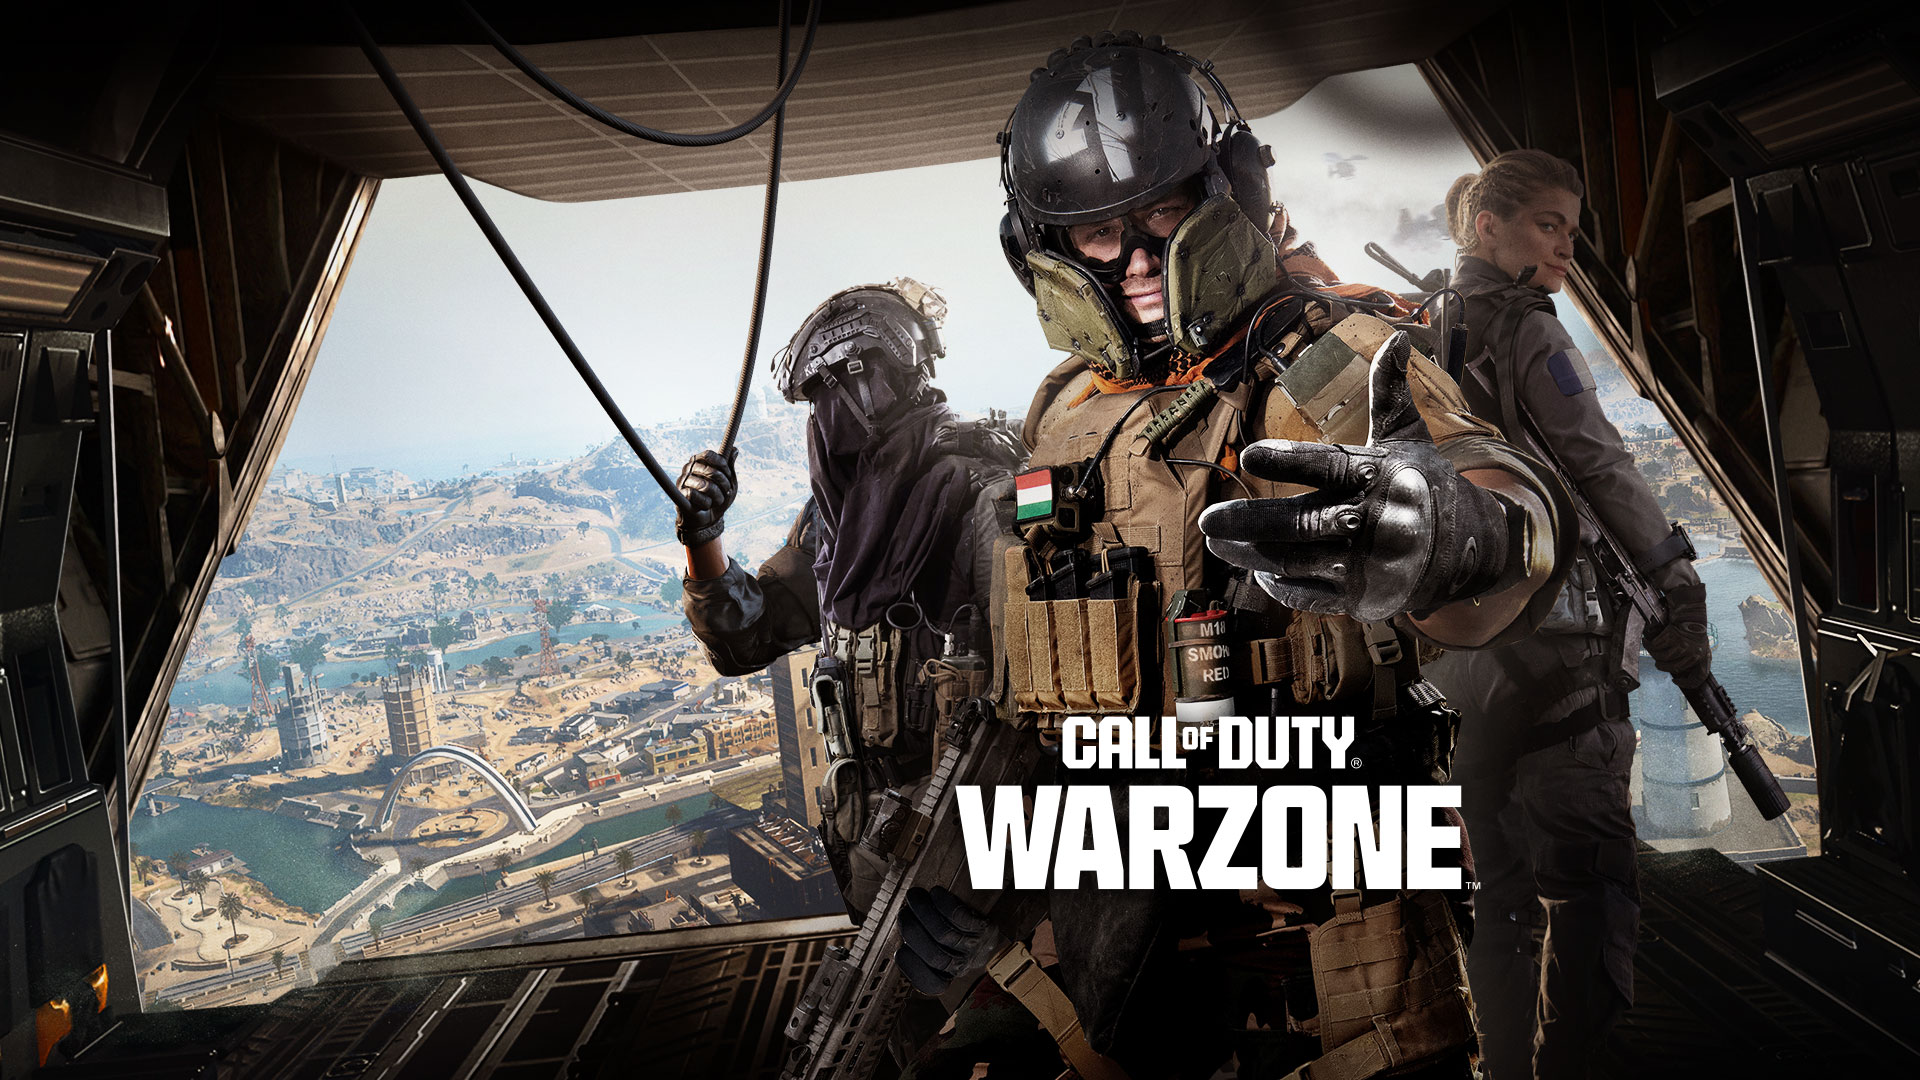 Call of Duty Warzone, debout à l’arrière d’un avion de transport, un trio d’opérateurs vous invite à prendre part à l’action.